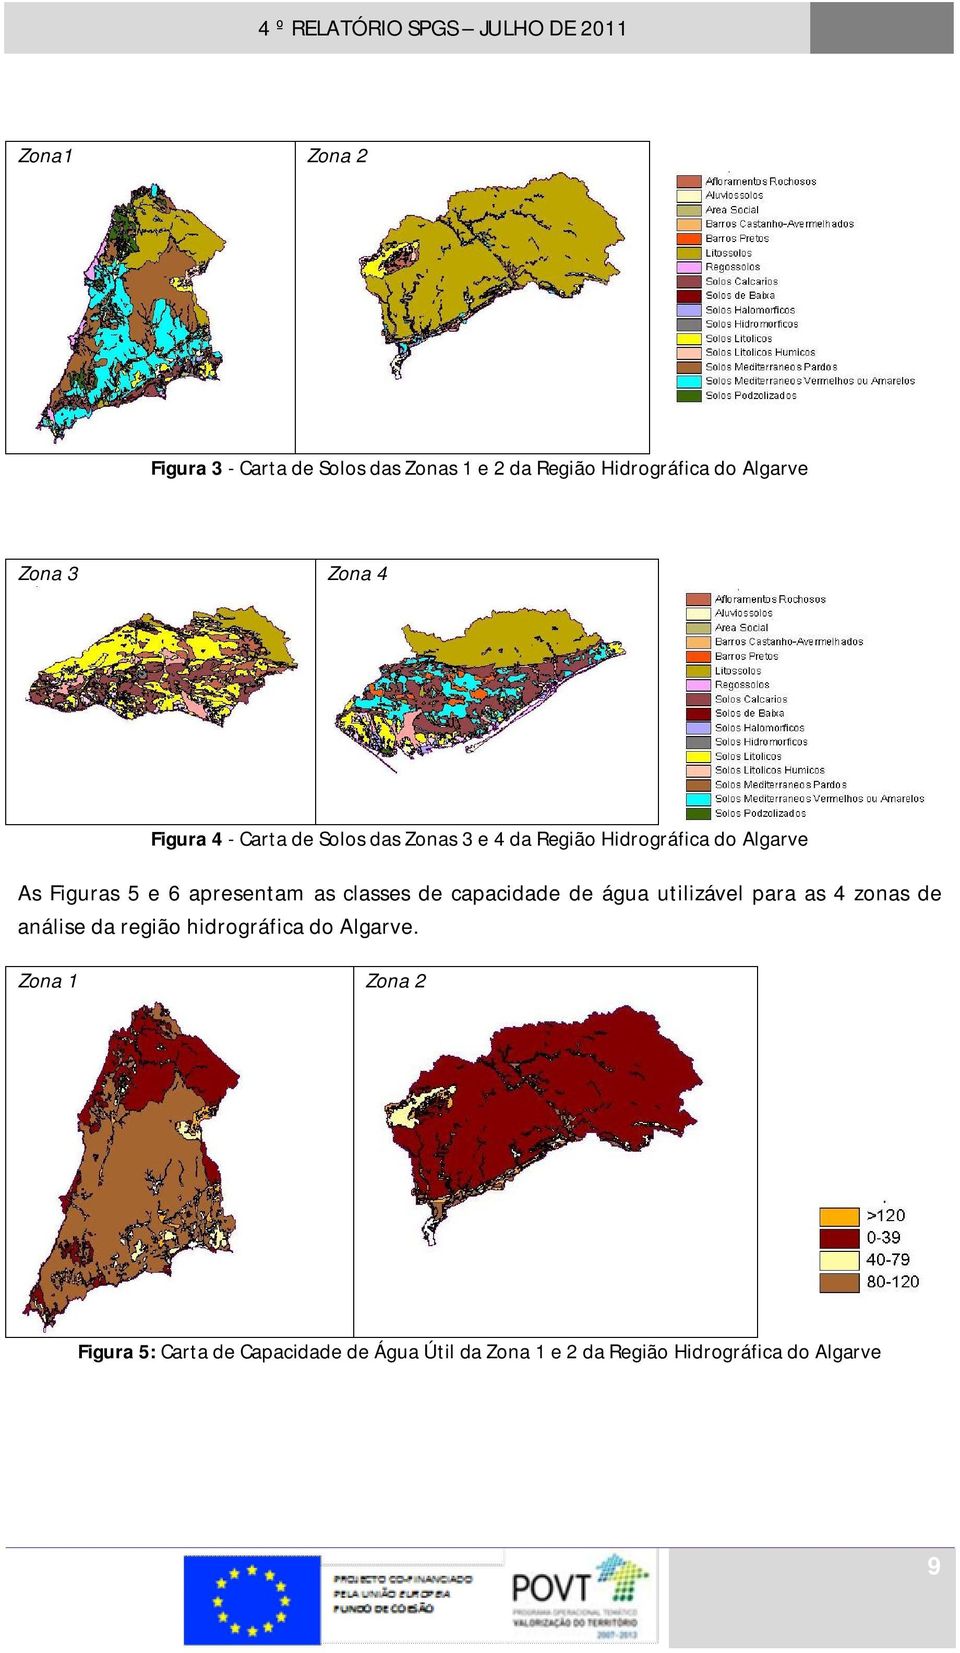 as classes de capacidade de água utilizável para as 4 zonas de análise da região hidrográfica do Algarve.